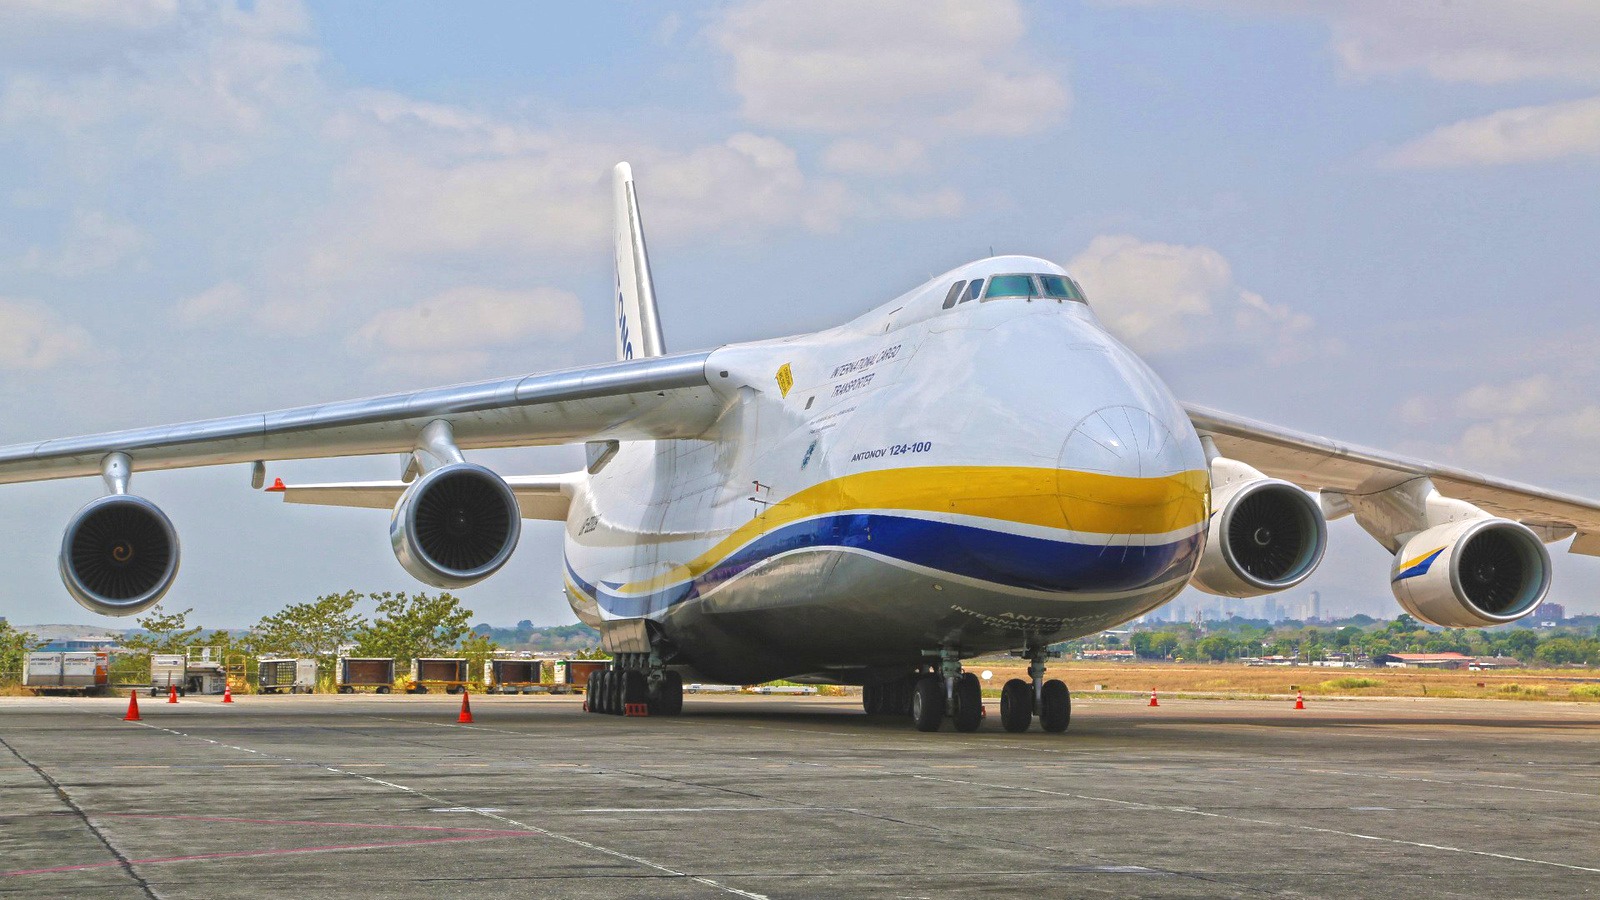 Все двигатели украинских Ан-124 находятся в плачевном состоянии АН-124,Двигателя,Самолеты,Украина,Экономика,Украина